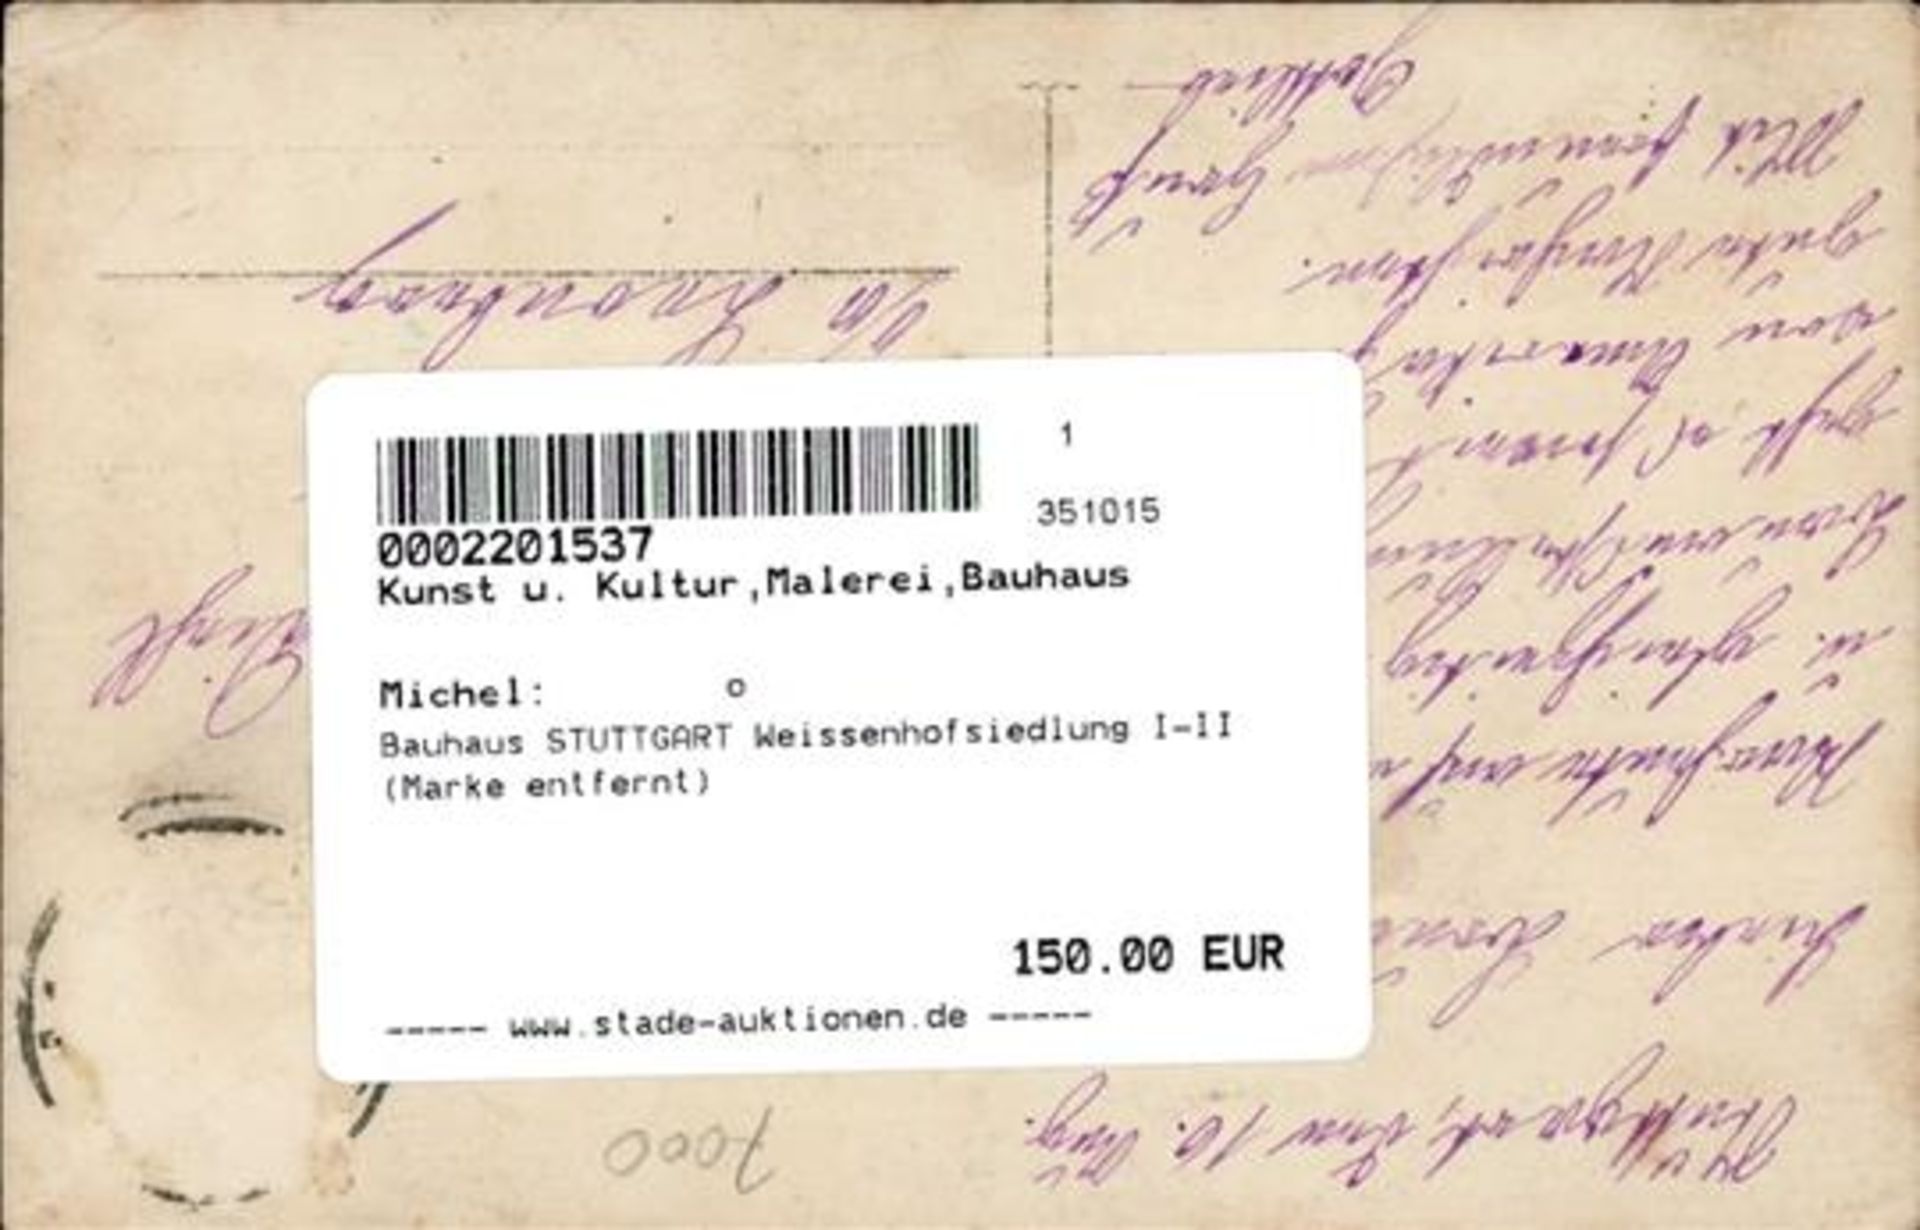 Bauhaus STUTTGART Weissenhofsiedlung I-II (Marke entfernt) - Image 2 of 2